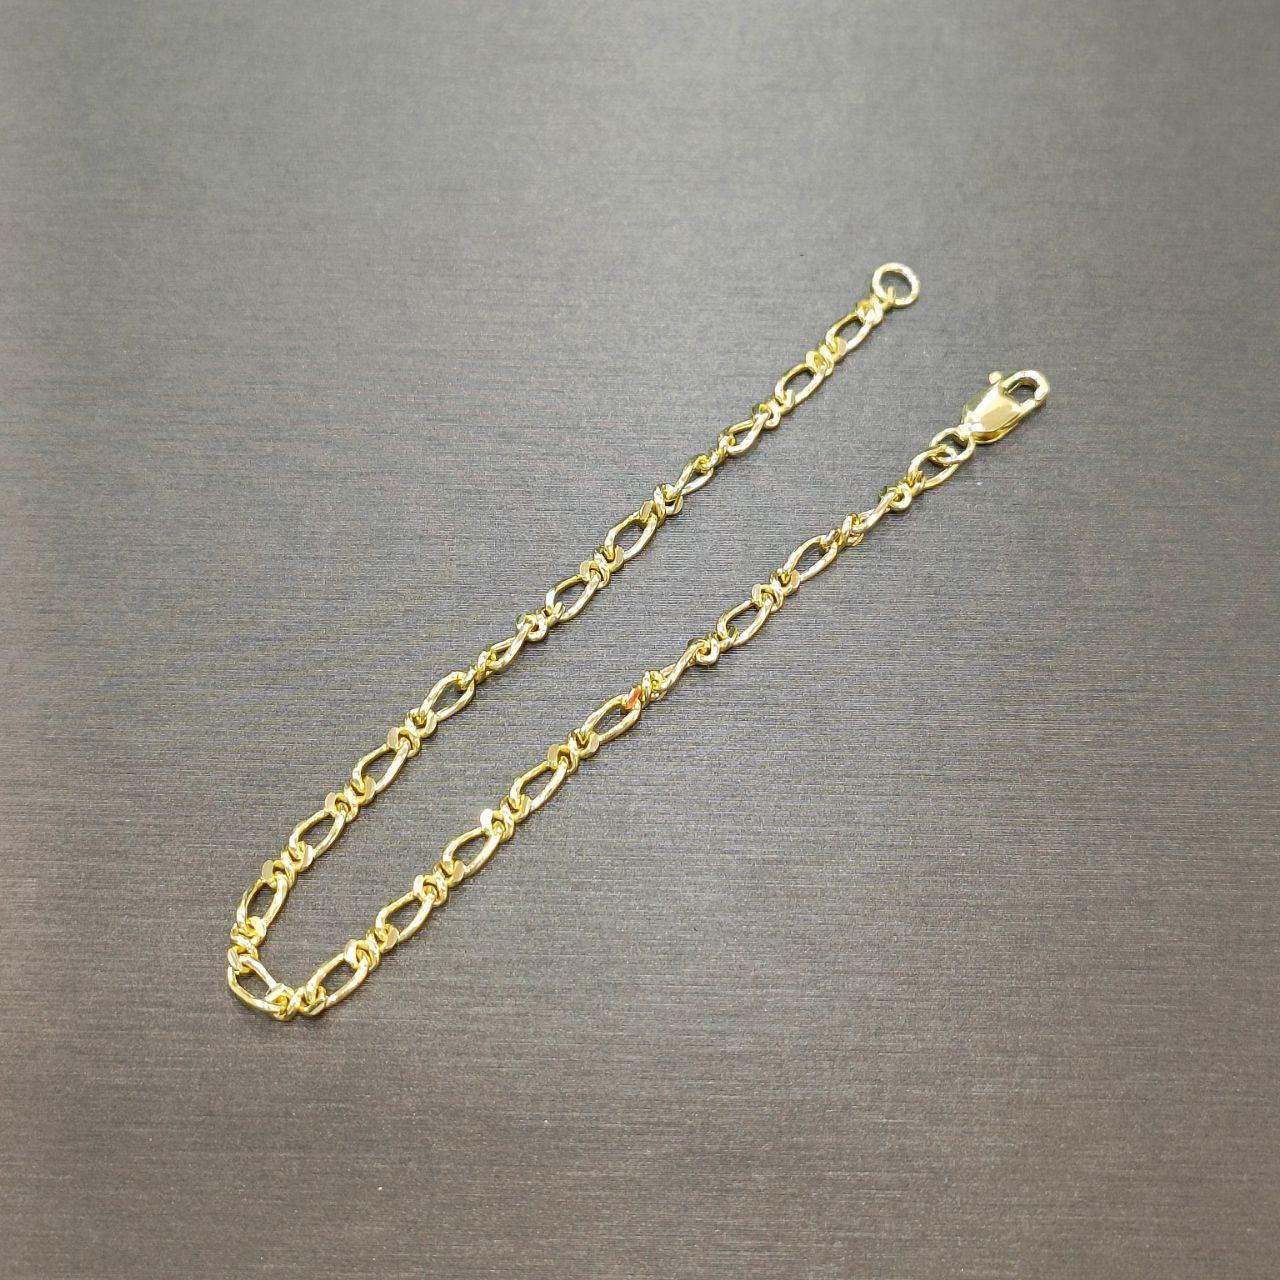 22k / 916 Gold Scale Bracelet V2-916 gold-Best Gold Shop